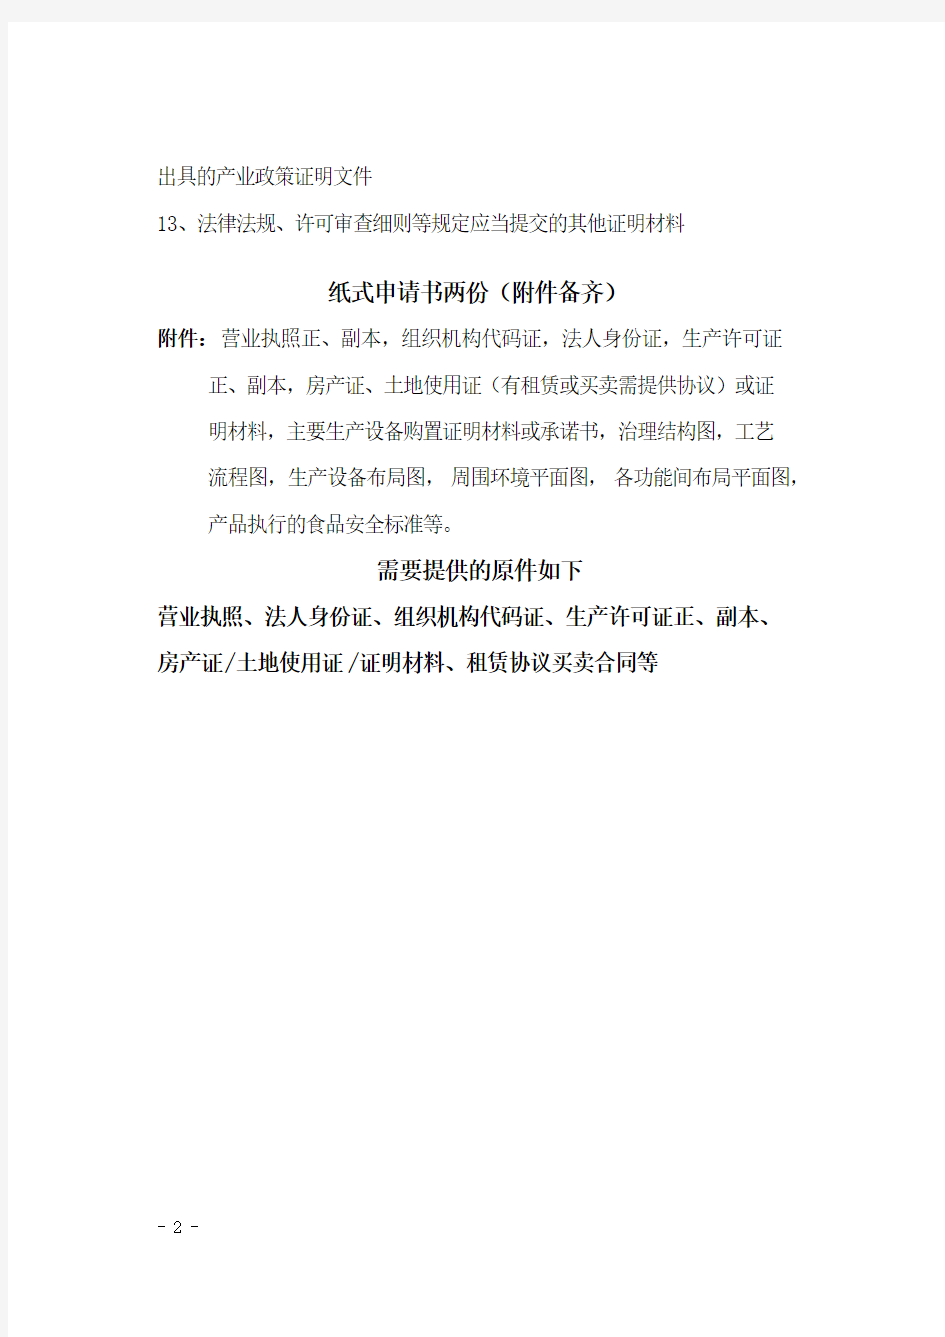 辽宁省2011食品生产许可证提交材料清单